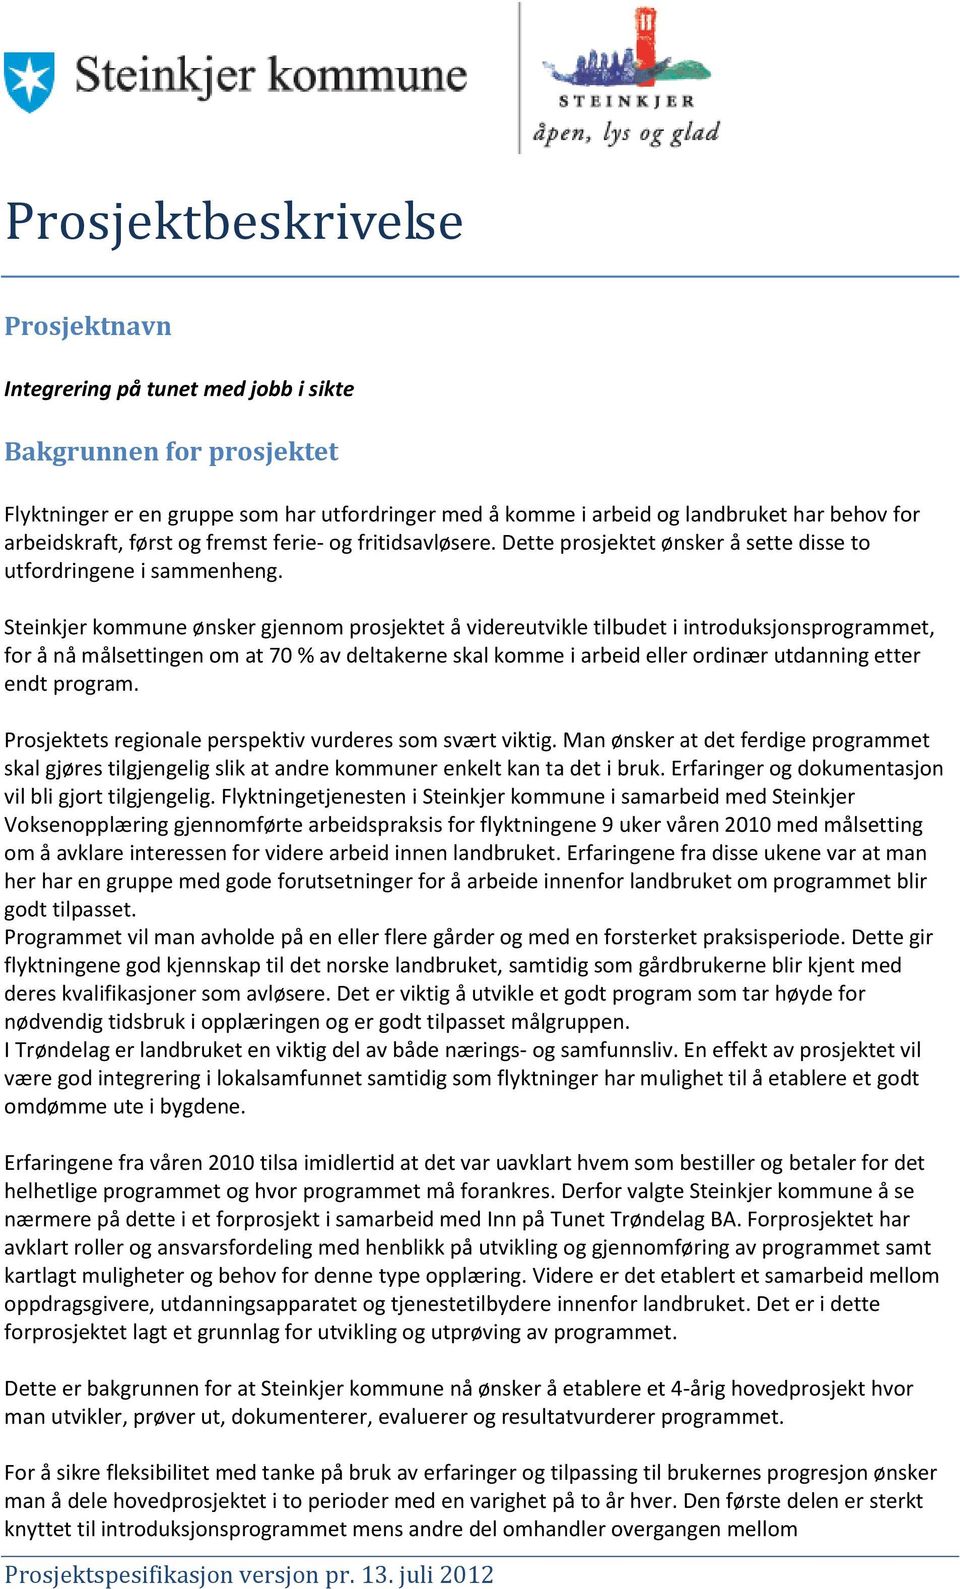 Steinkjer kommune ønsker gjennom prosjektet å videreutvikle tilbudet i introduksjonsprogrammet, for å nå målsettingen om at 70 % av deltakerne skal komme i arbeid eller ordinær utdanning etter endt